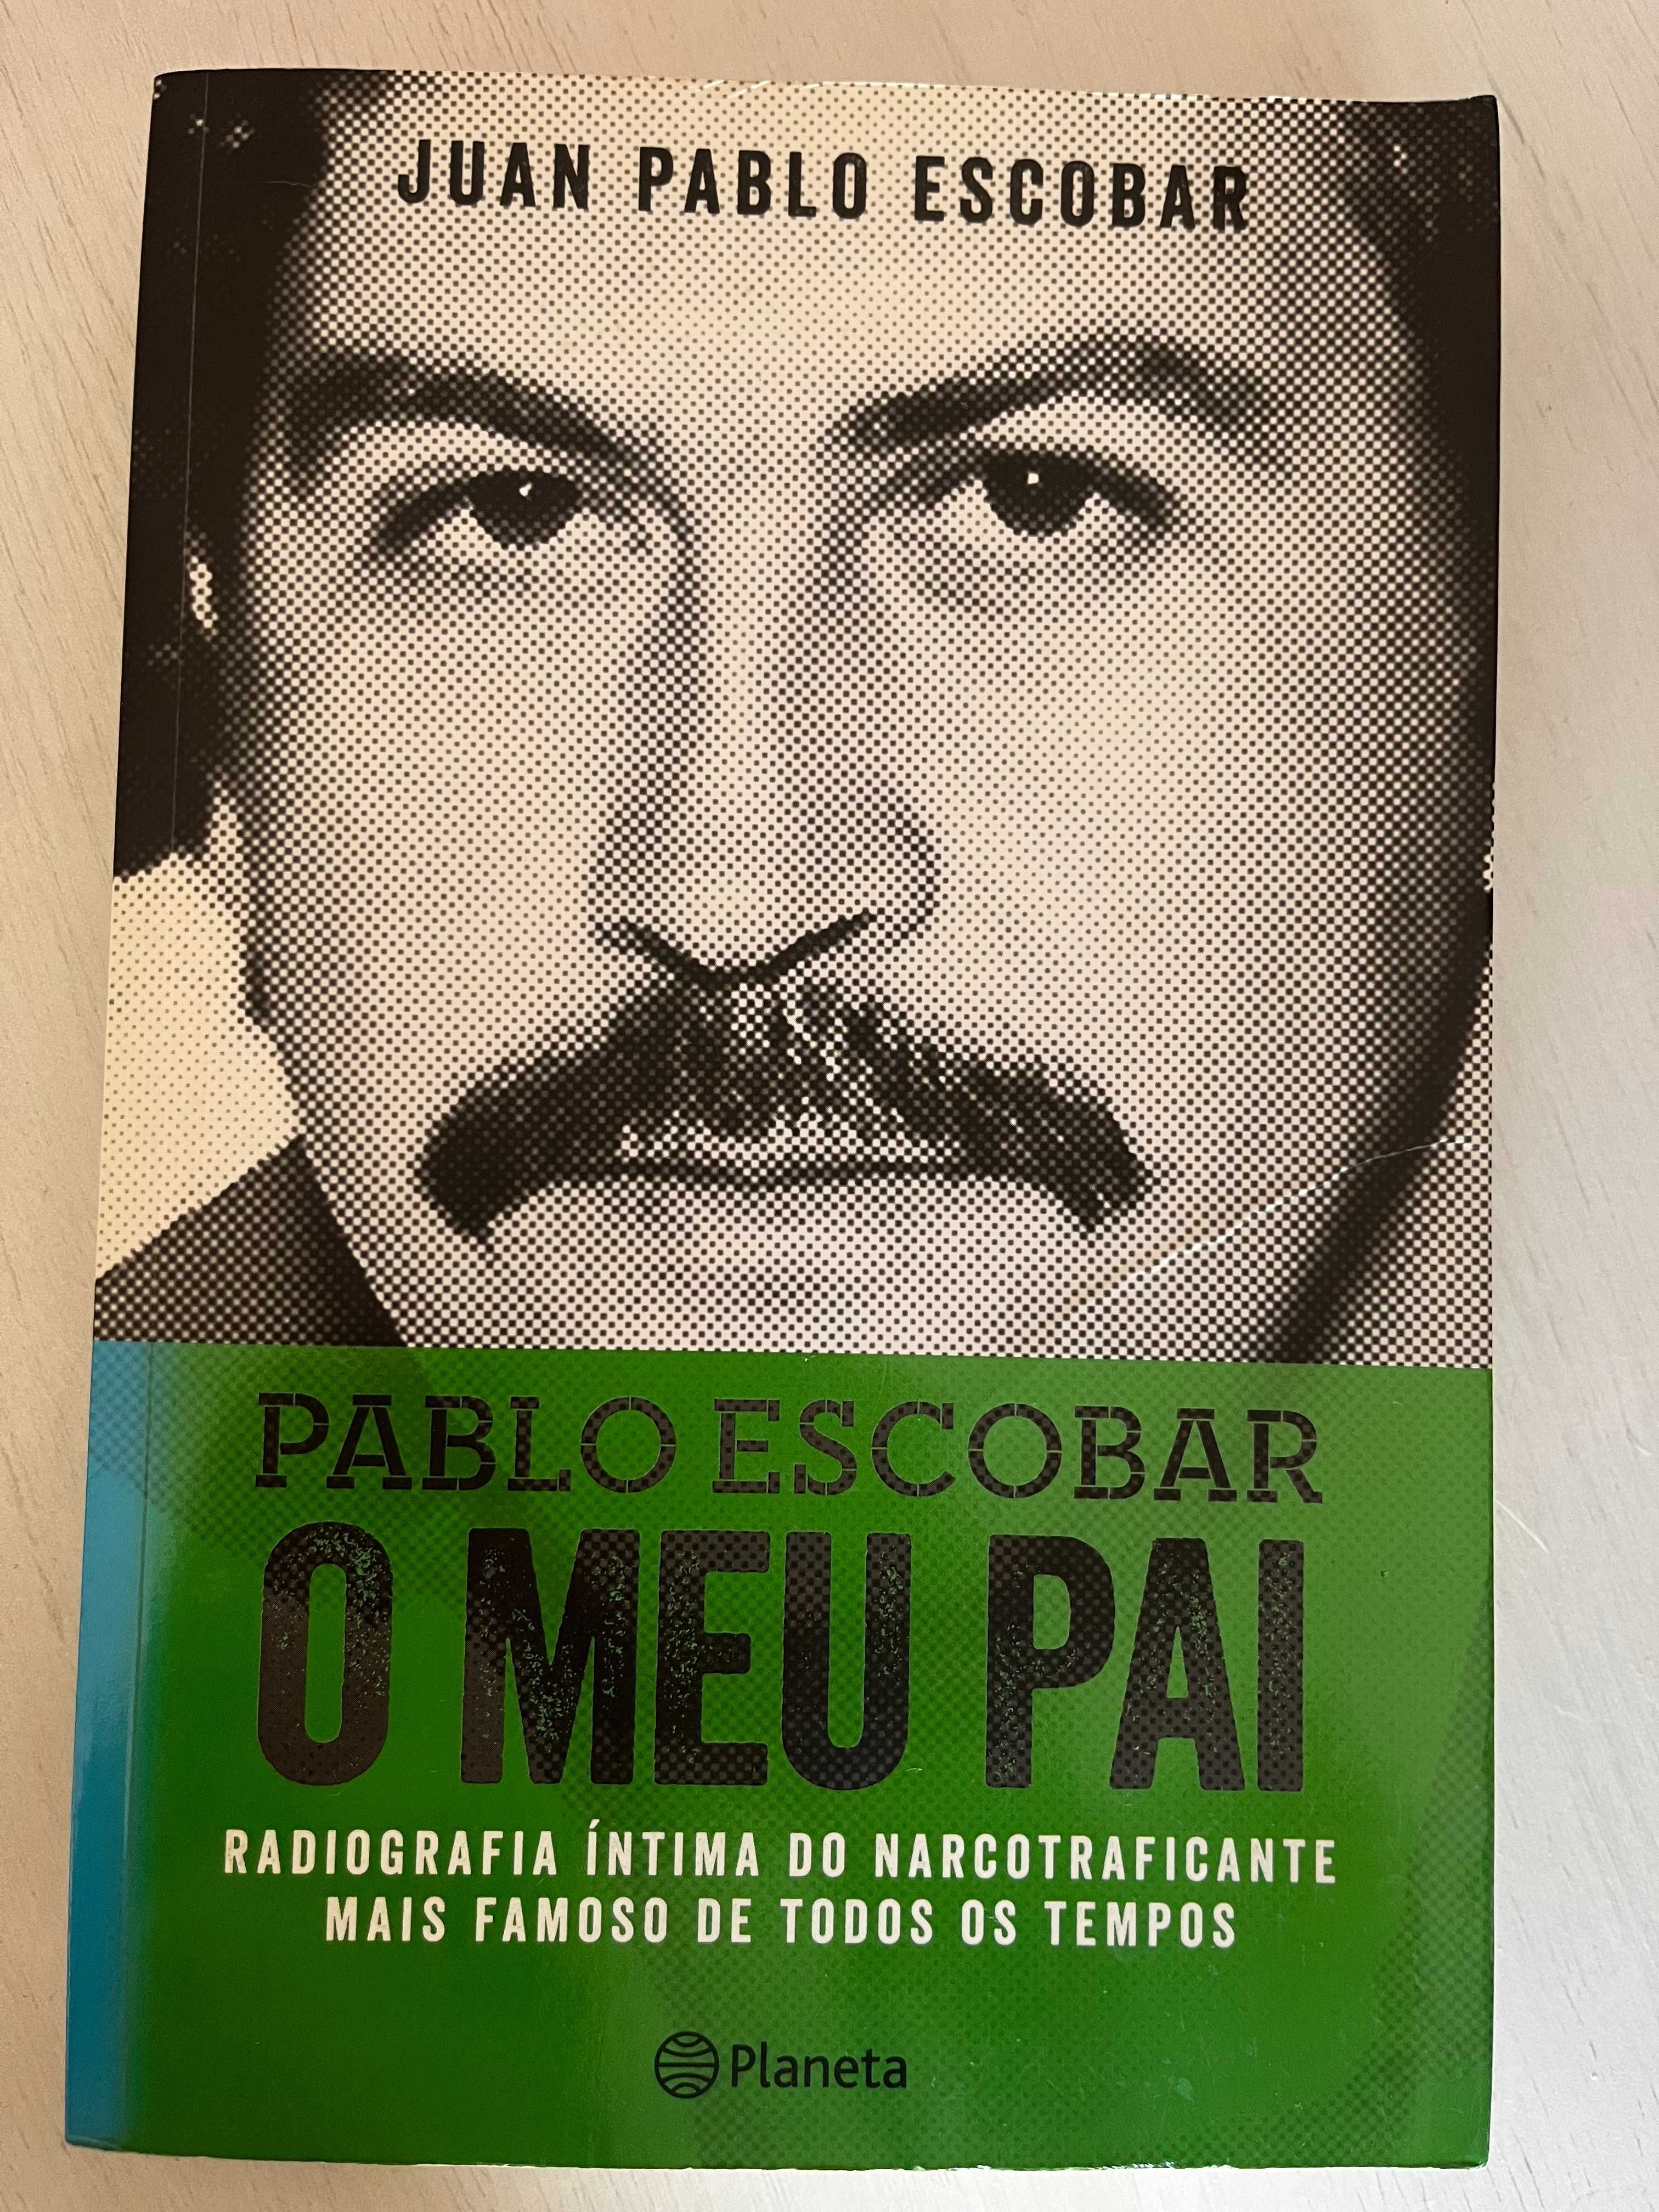 Pablo Escobar - O Meu Pai, de Juan Pablo Escobar